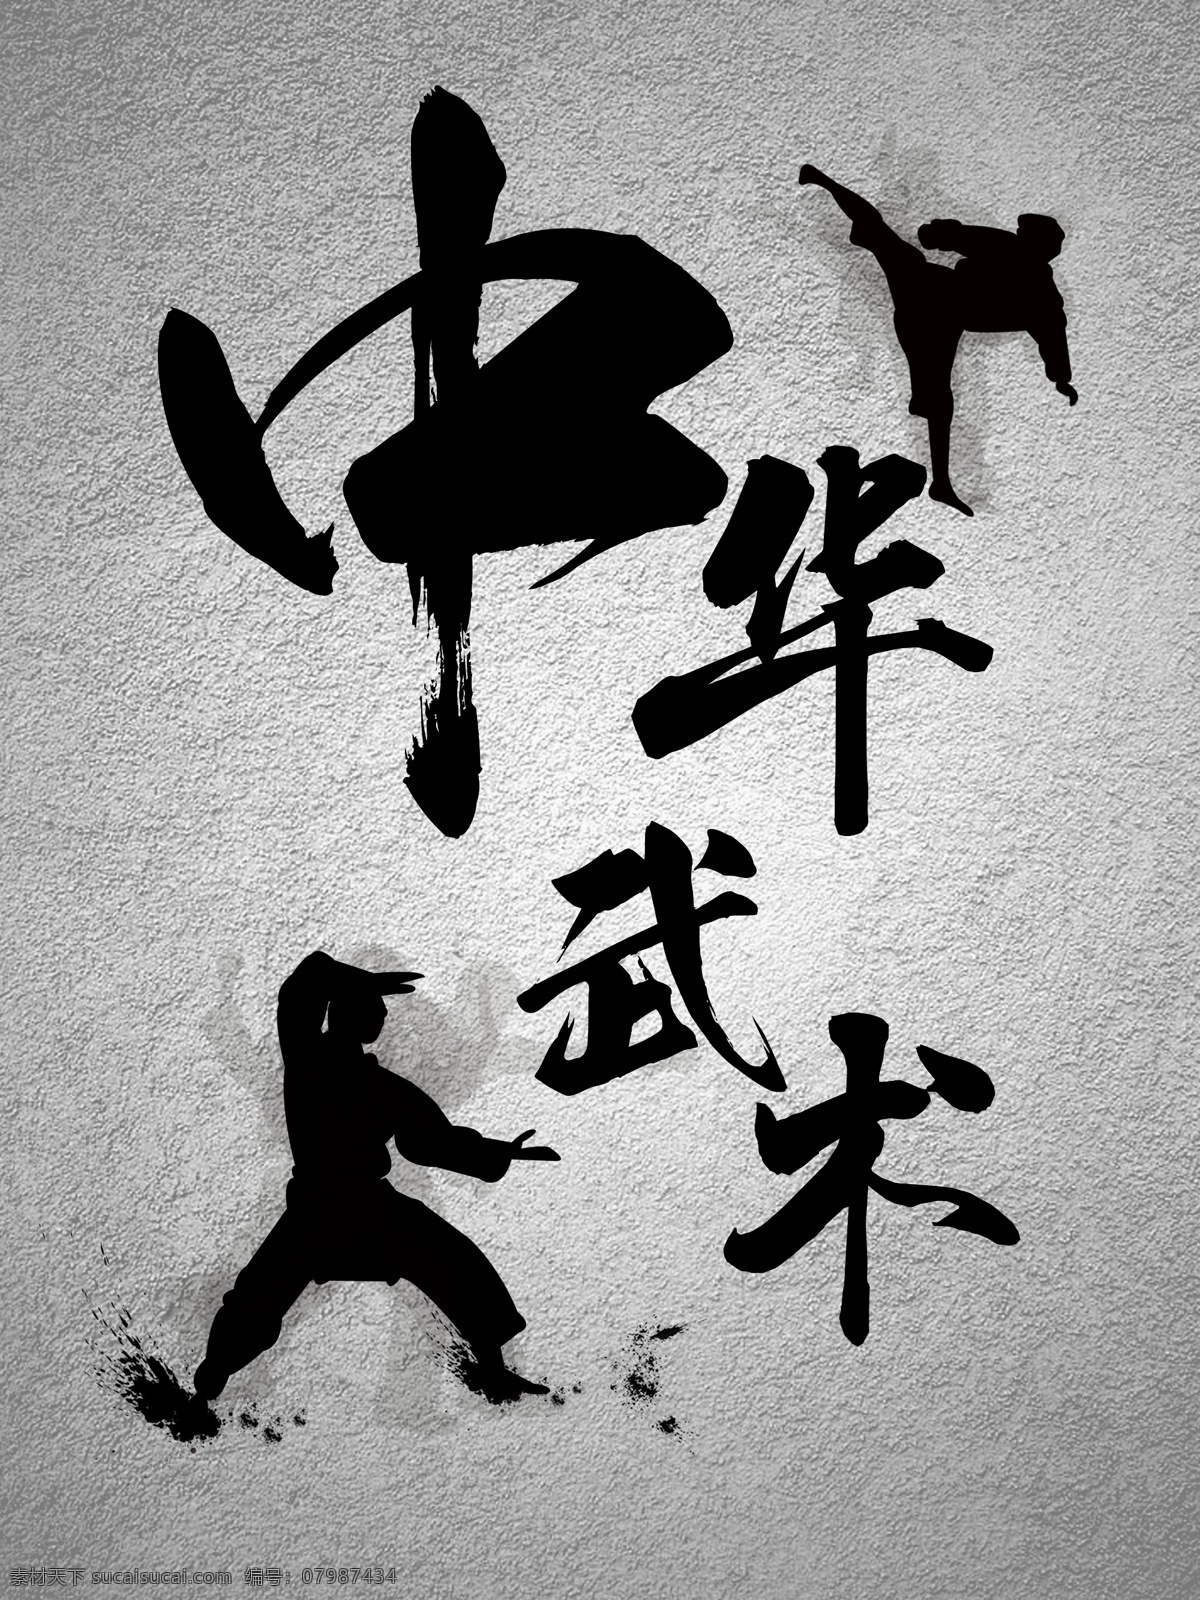 中华武术 中国风 水墨 功夫 传统文化 国粹 练武 人影 底板 砂岩 杂物